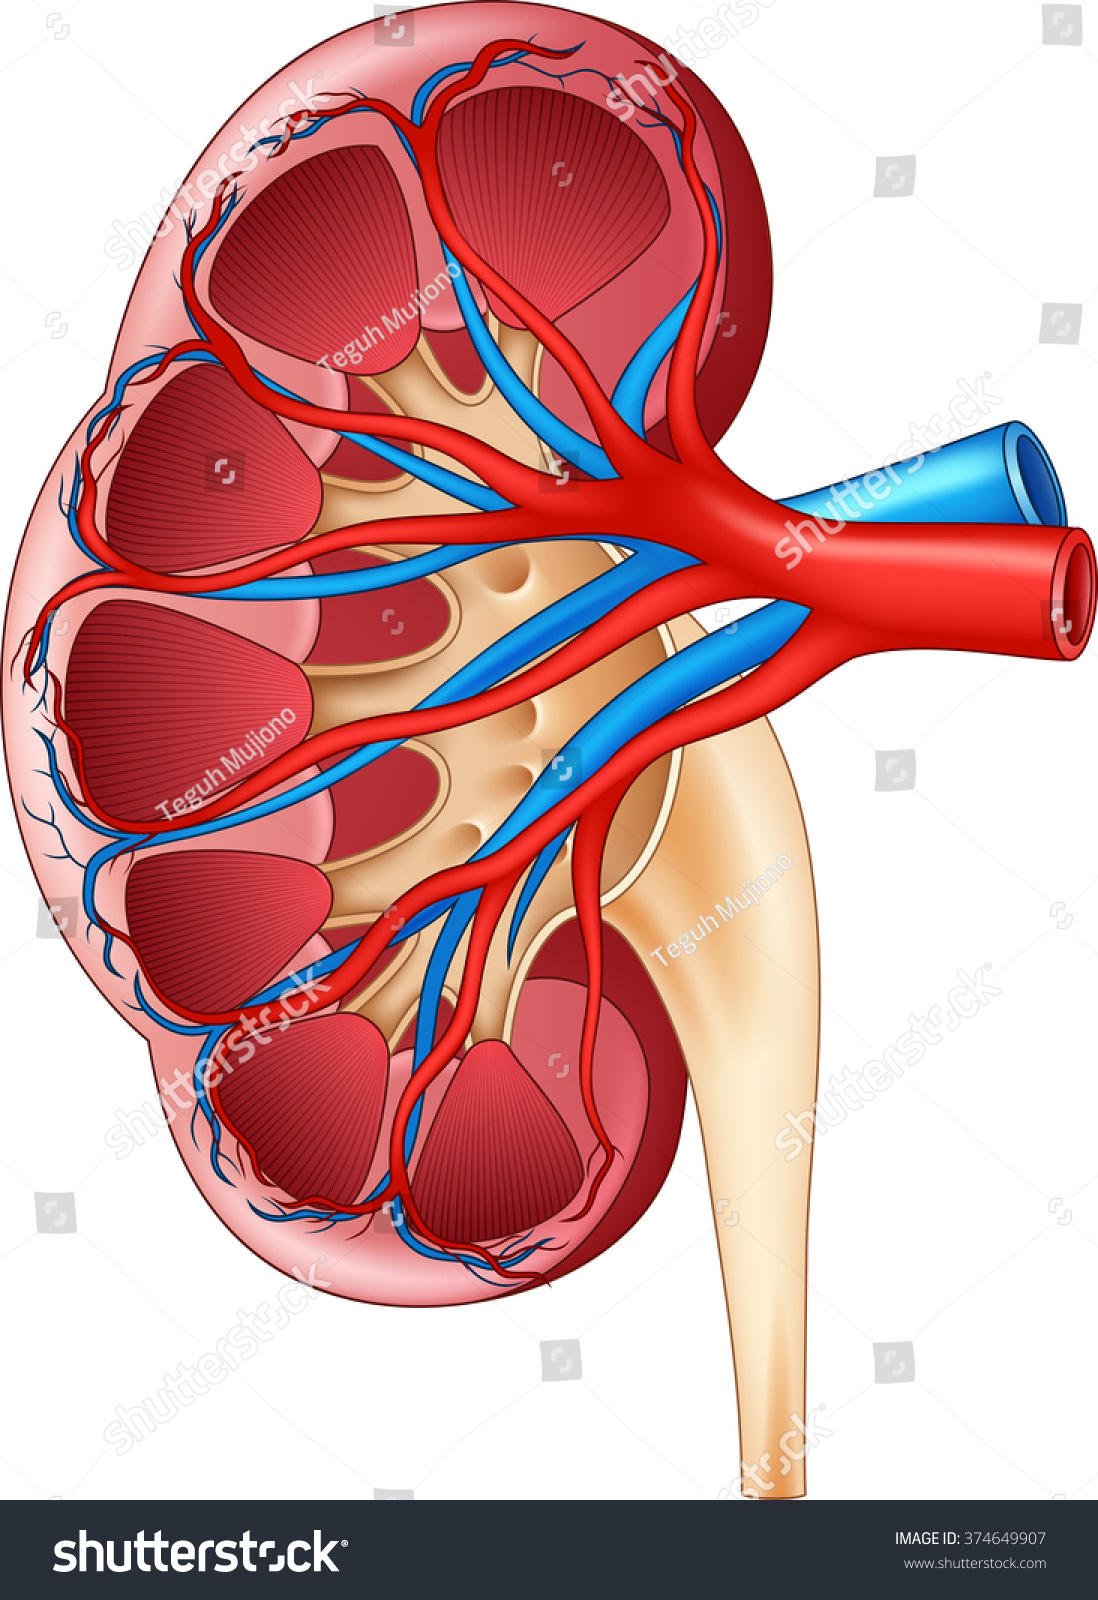 Illustration Human Internal Kidney Anatomy Stock Illustration 374649907